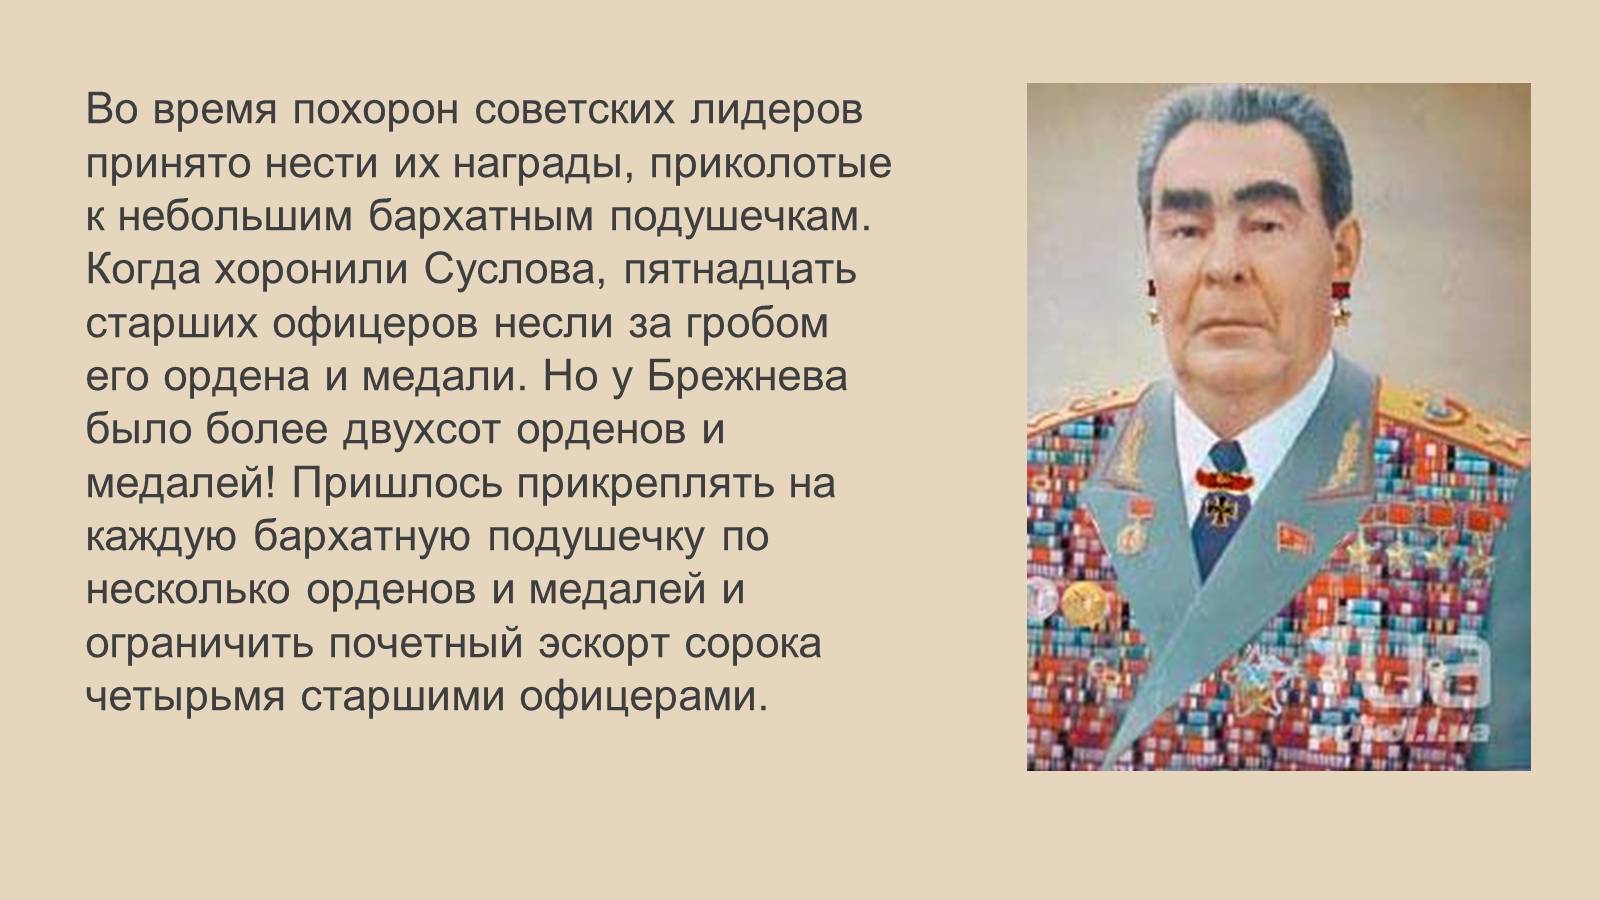 Название периода правления брежнева. Награды Брежнева герой СССР.